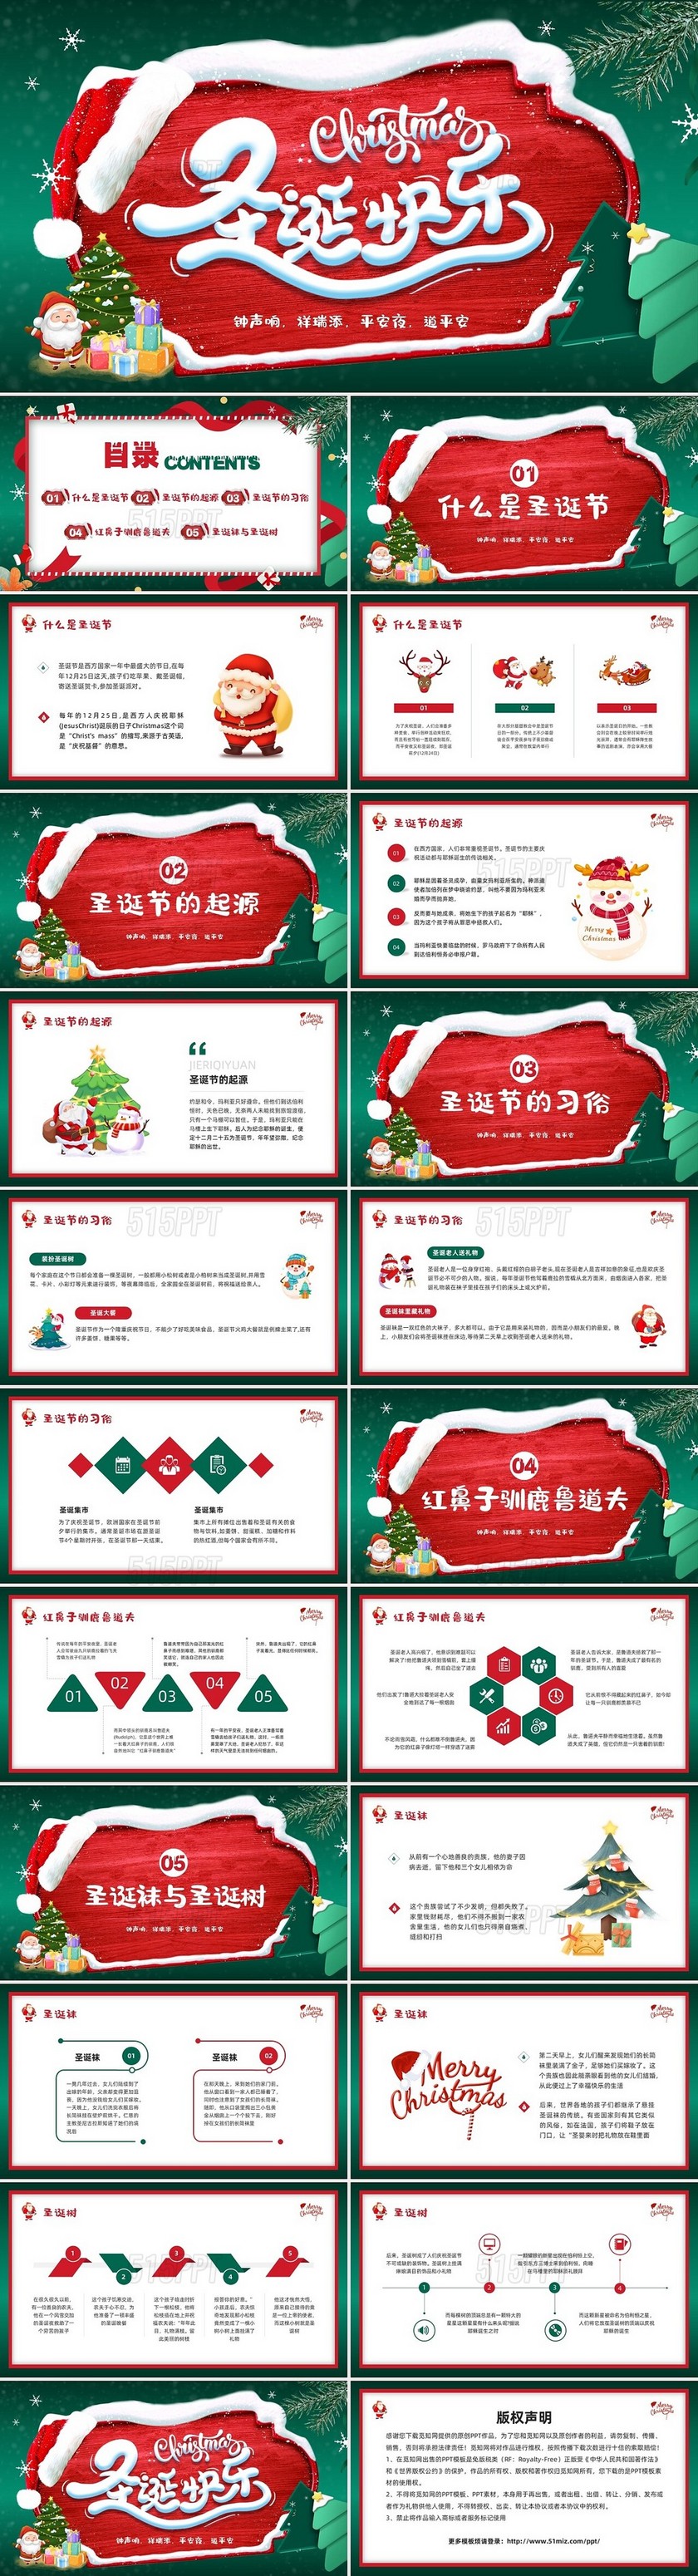 红绿插画圣诞节介绍PPT模板宣传PPT动态PPT